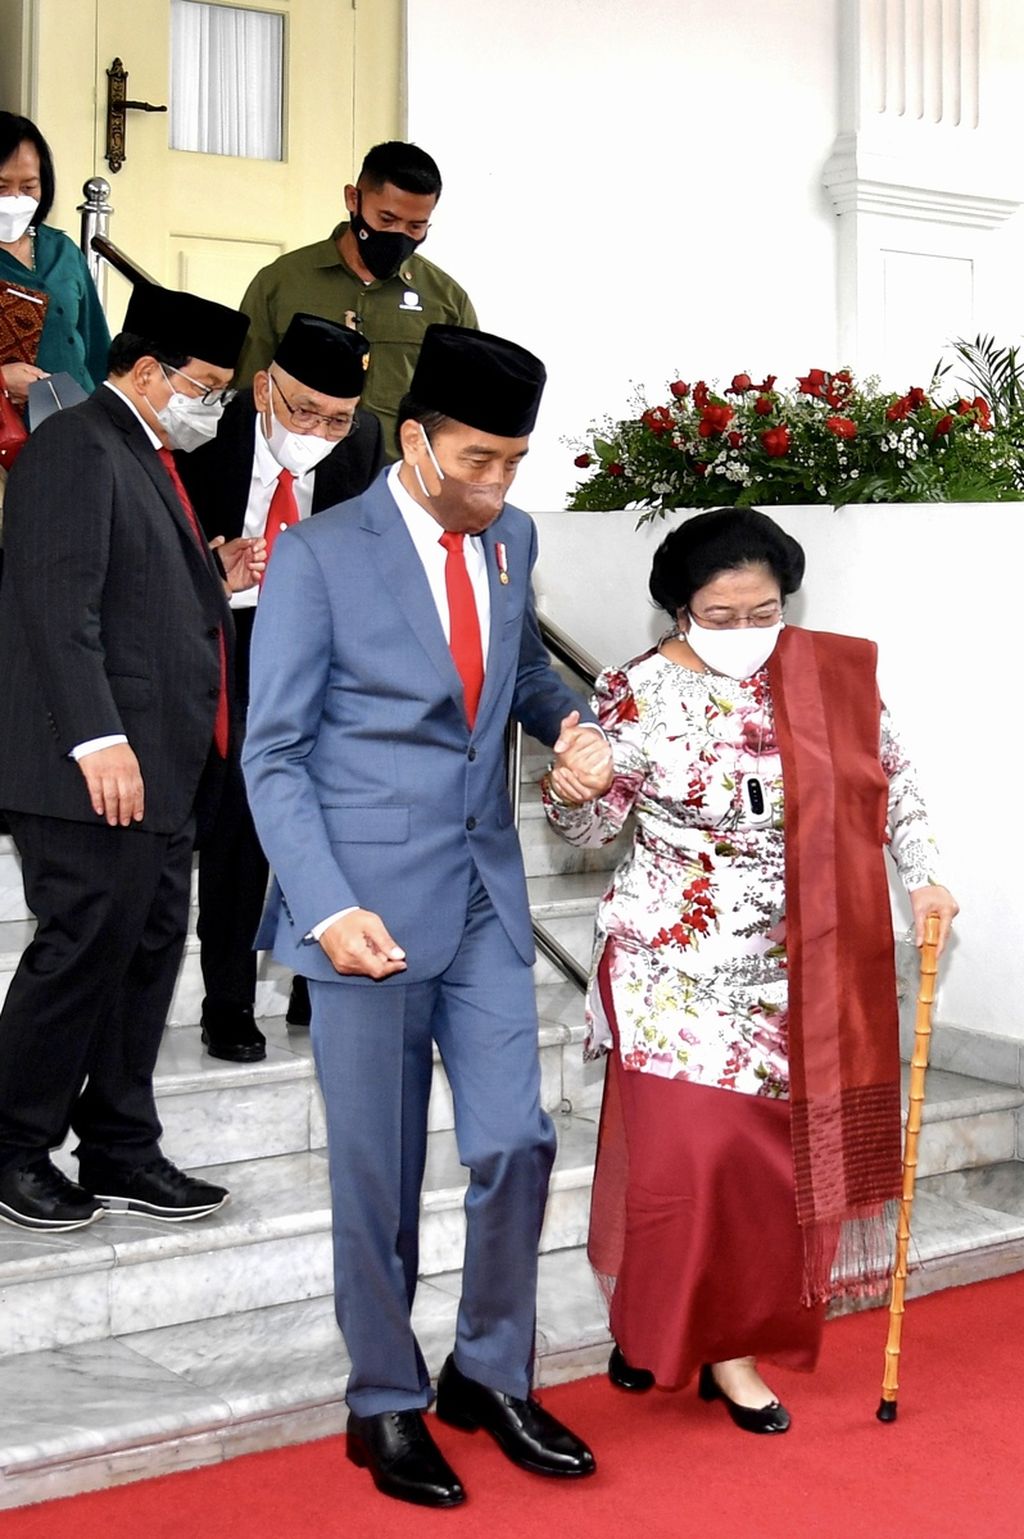 Presiden Joko Widodo menggandeng tangan Ketua Umum PDI-P Megawati Soekarnoputri saat mengantarkan ke mobilnya setelah pelantikan Megawati sebagai Ketua Dewan Pengarah Badan Pembinaan Ideologi Pancasila 2022-2027, di Istana Negara, Jakarta, Selasa (7/6/2022).